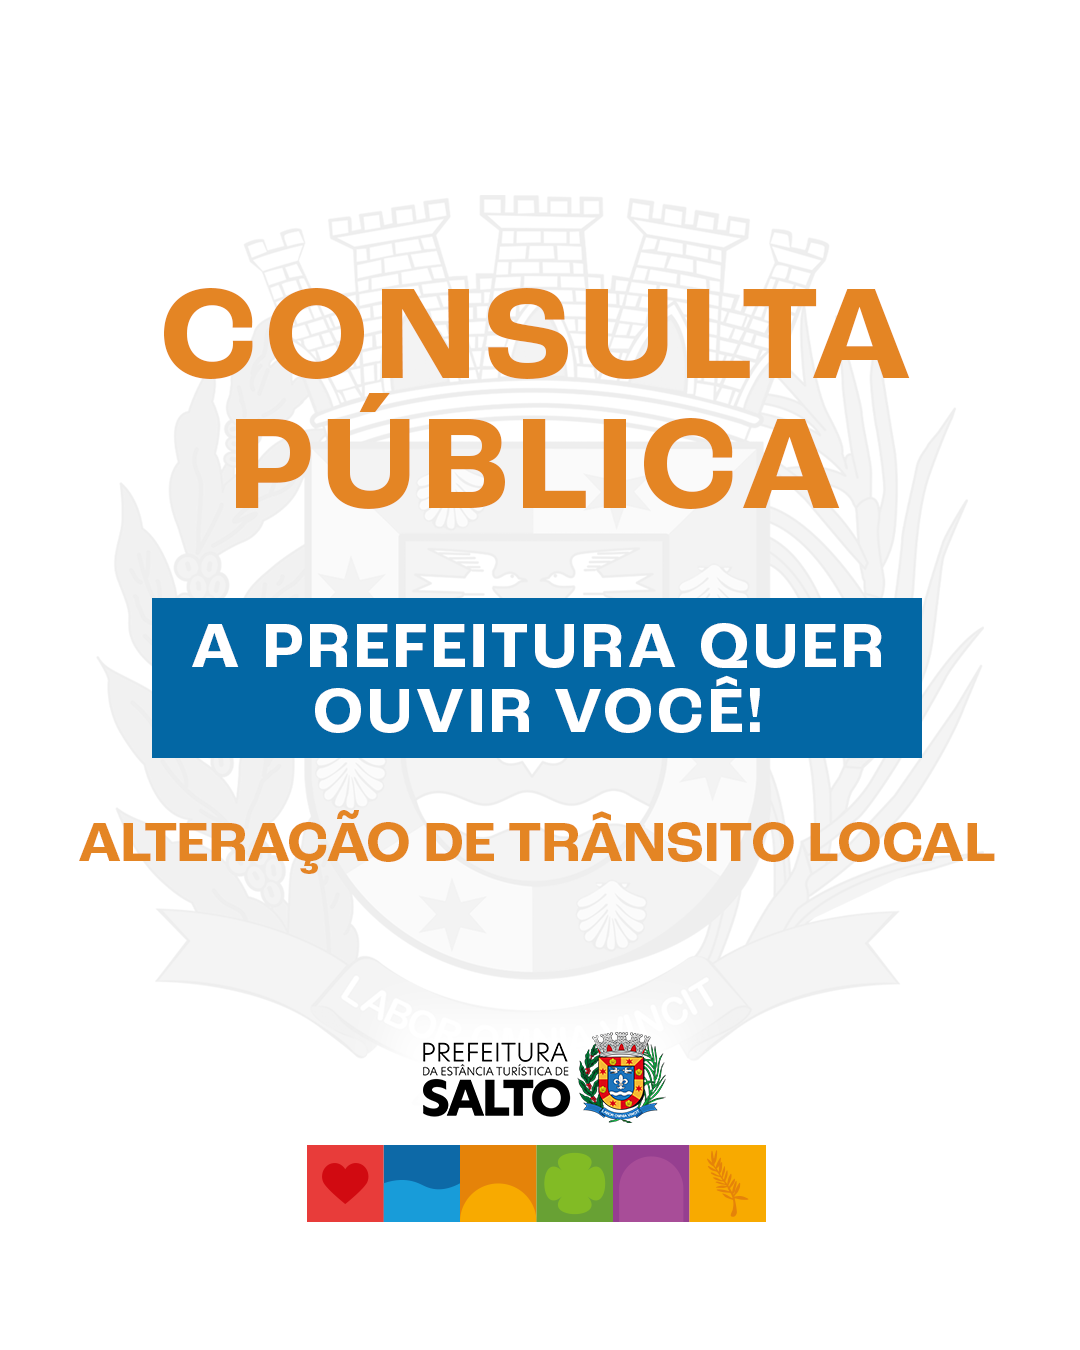 Prefeitura da Estância Turística de Salto Promove Consulta Pública sobre Mudanças no Trânsito em Três Vias